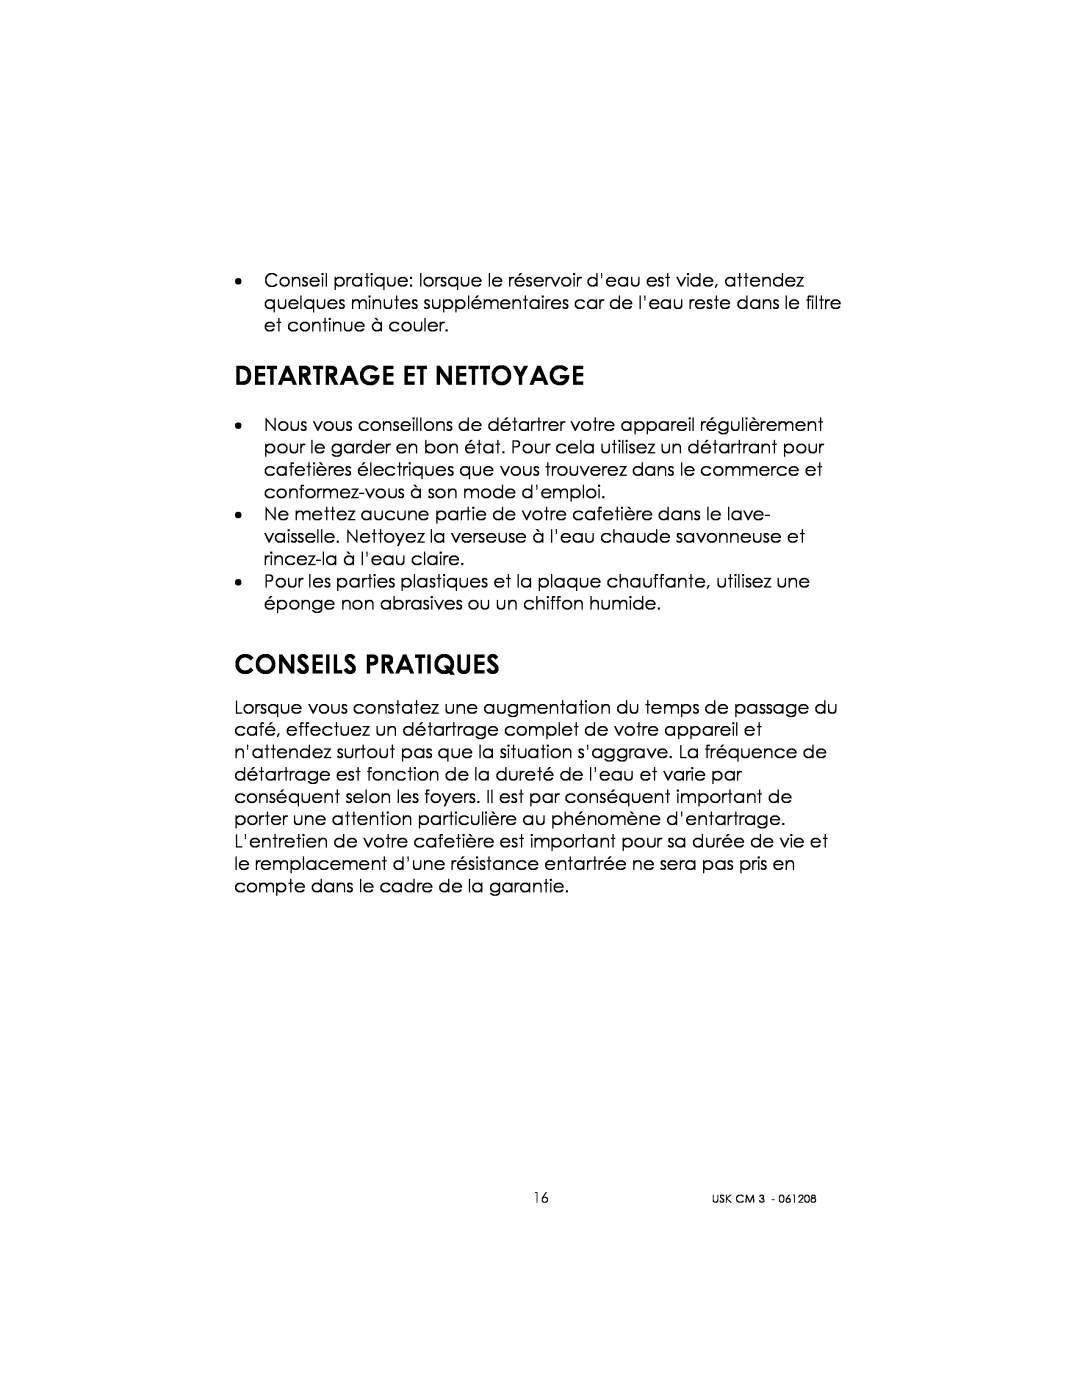 Kalorik USK CM 3 manual Detartrage Et Nettoyage, Conseils Pratiques 